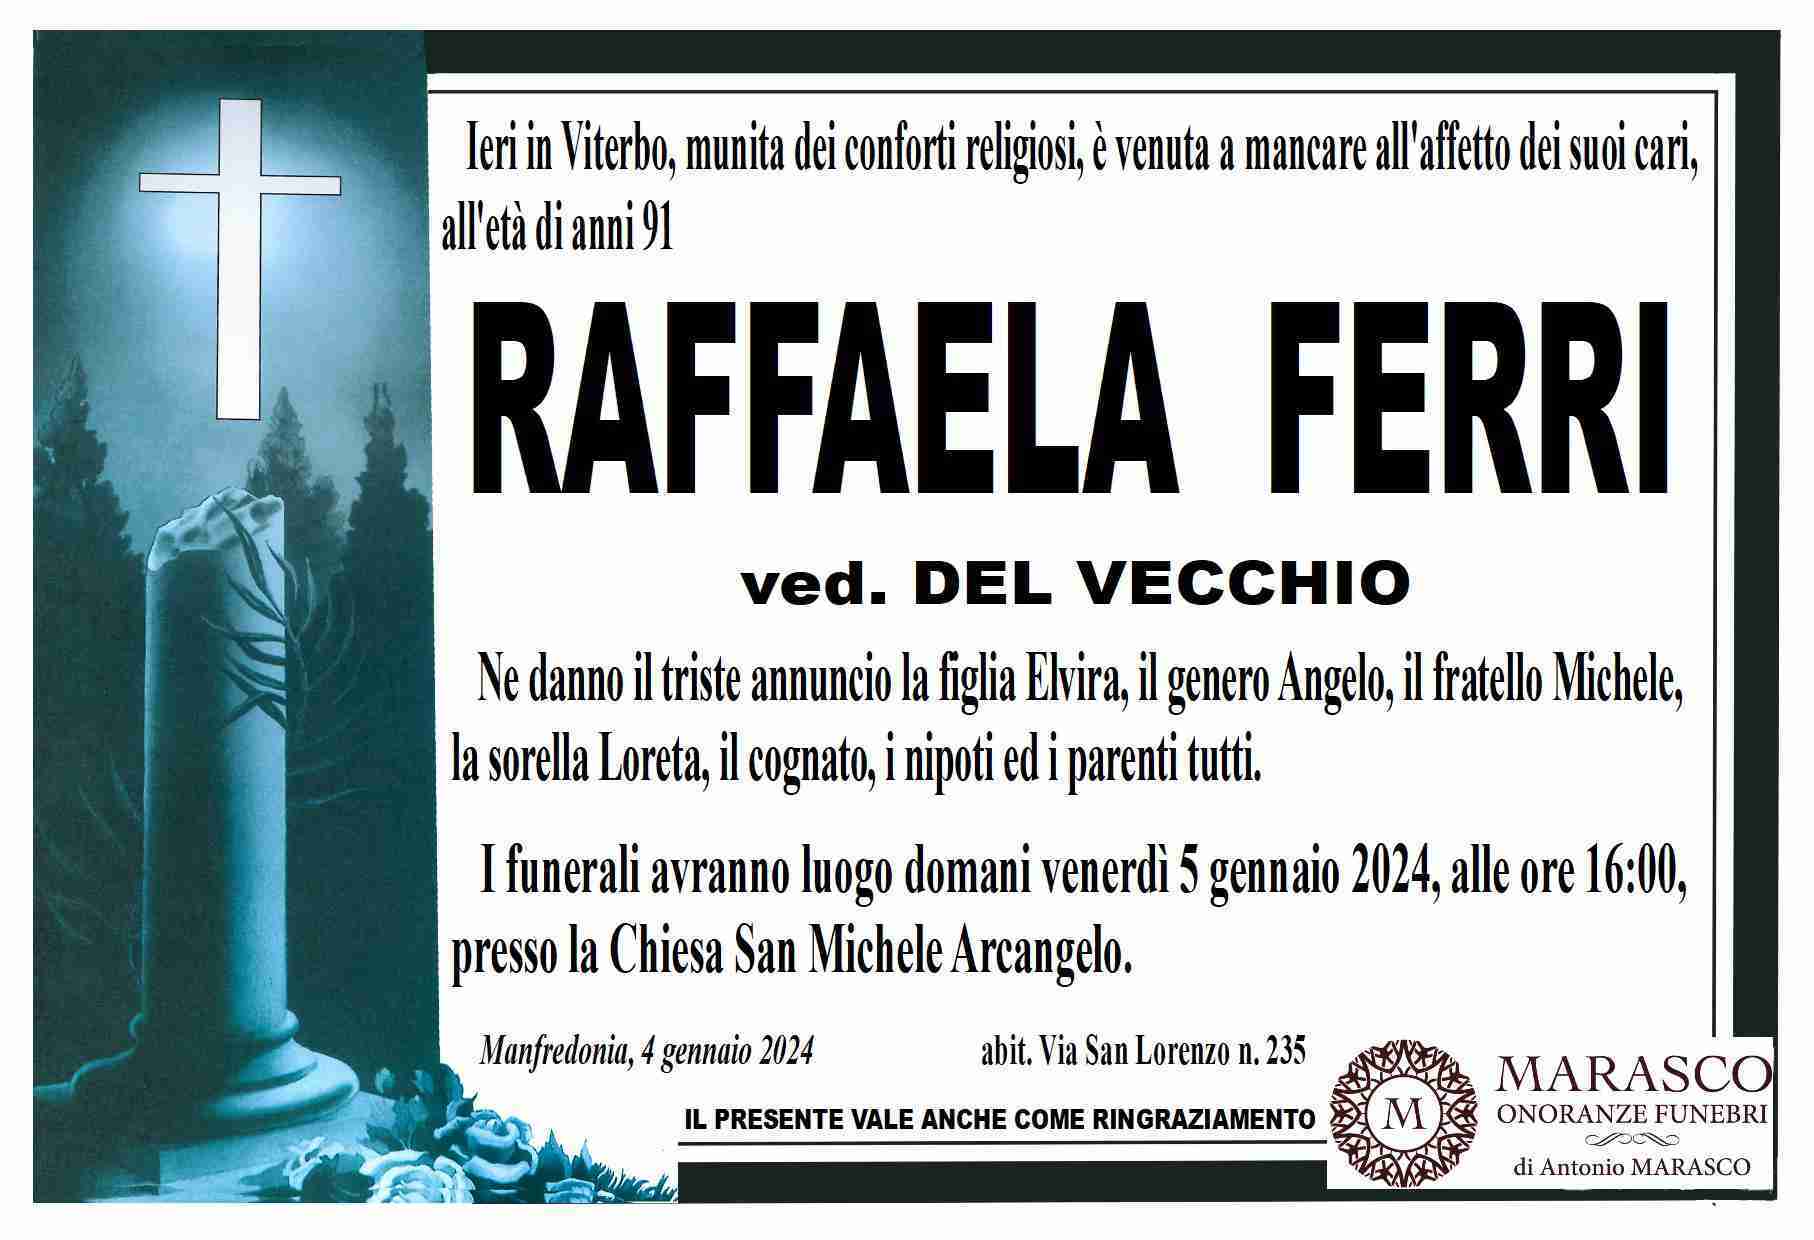 Raffaela Ferri